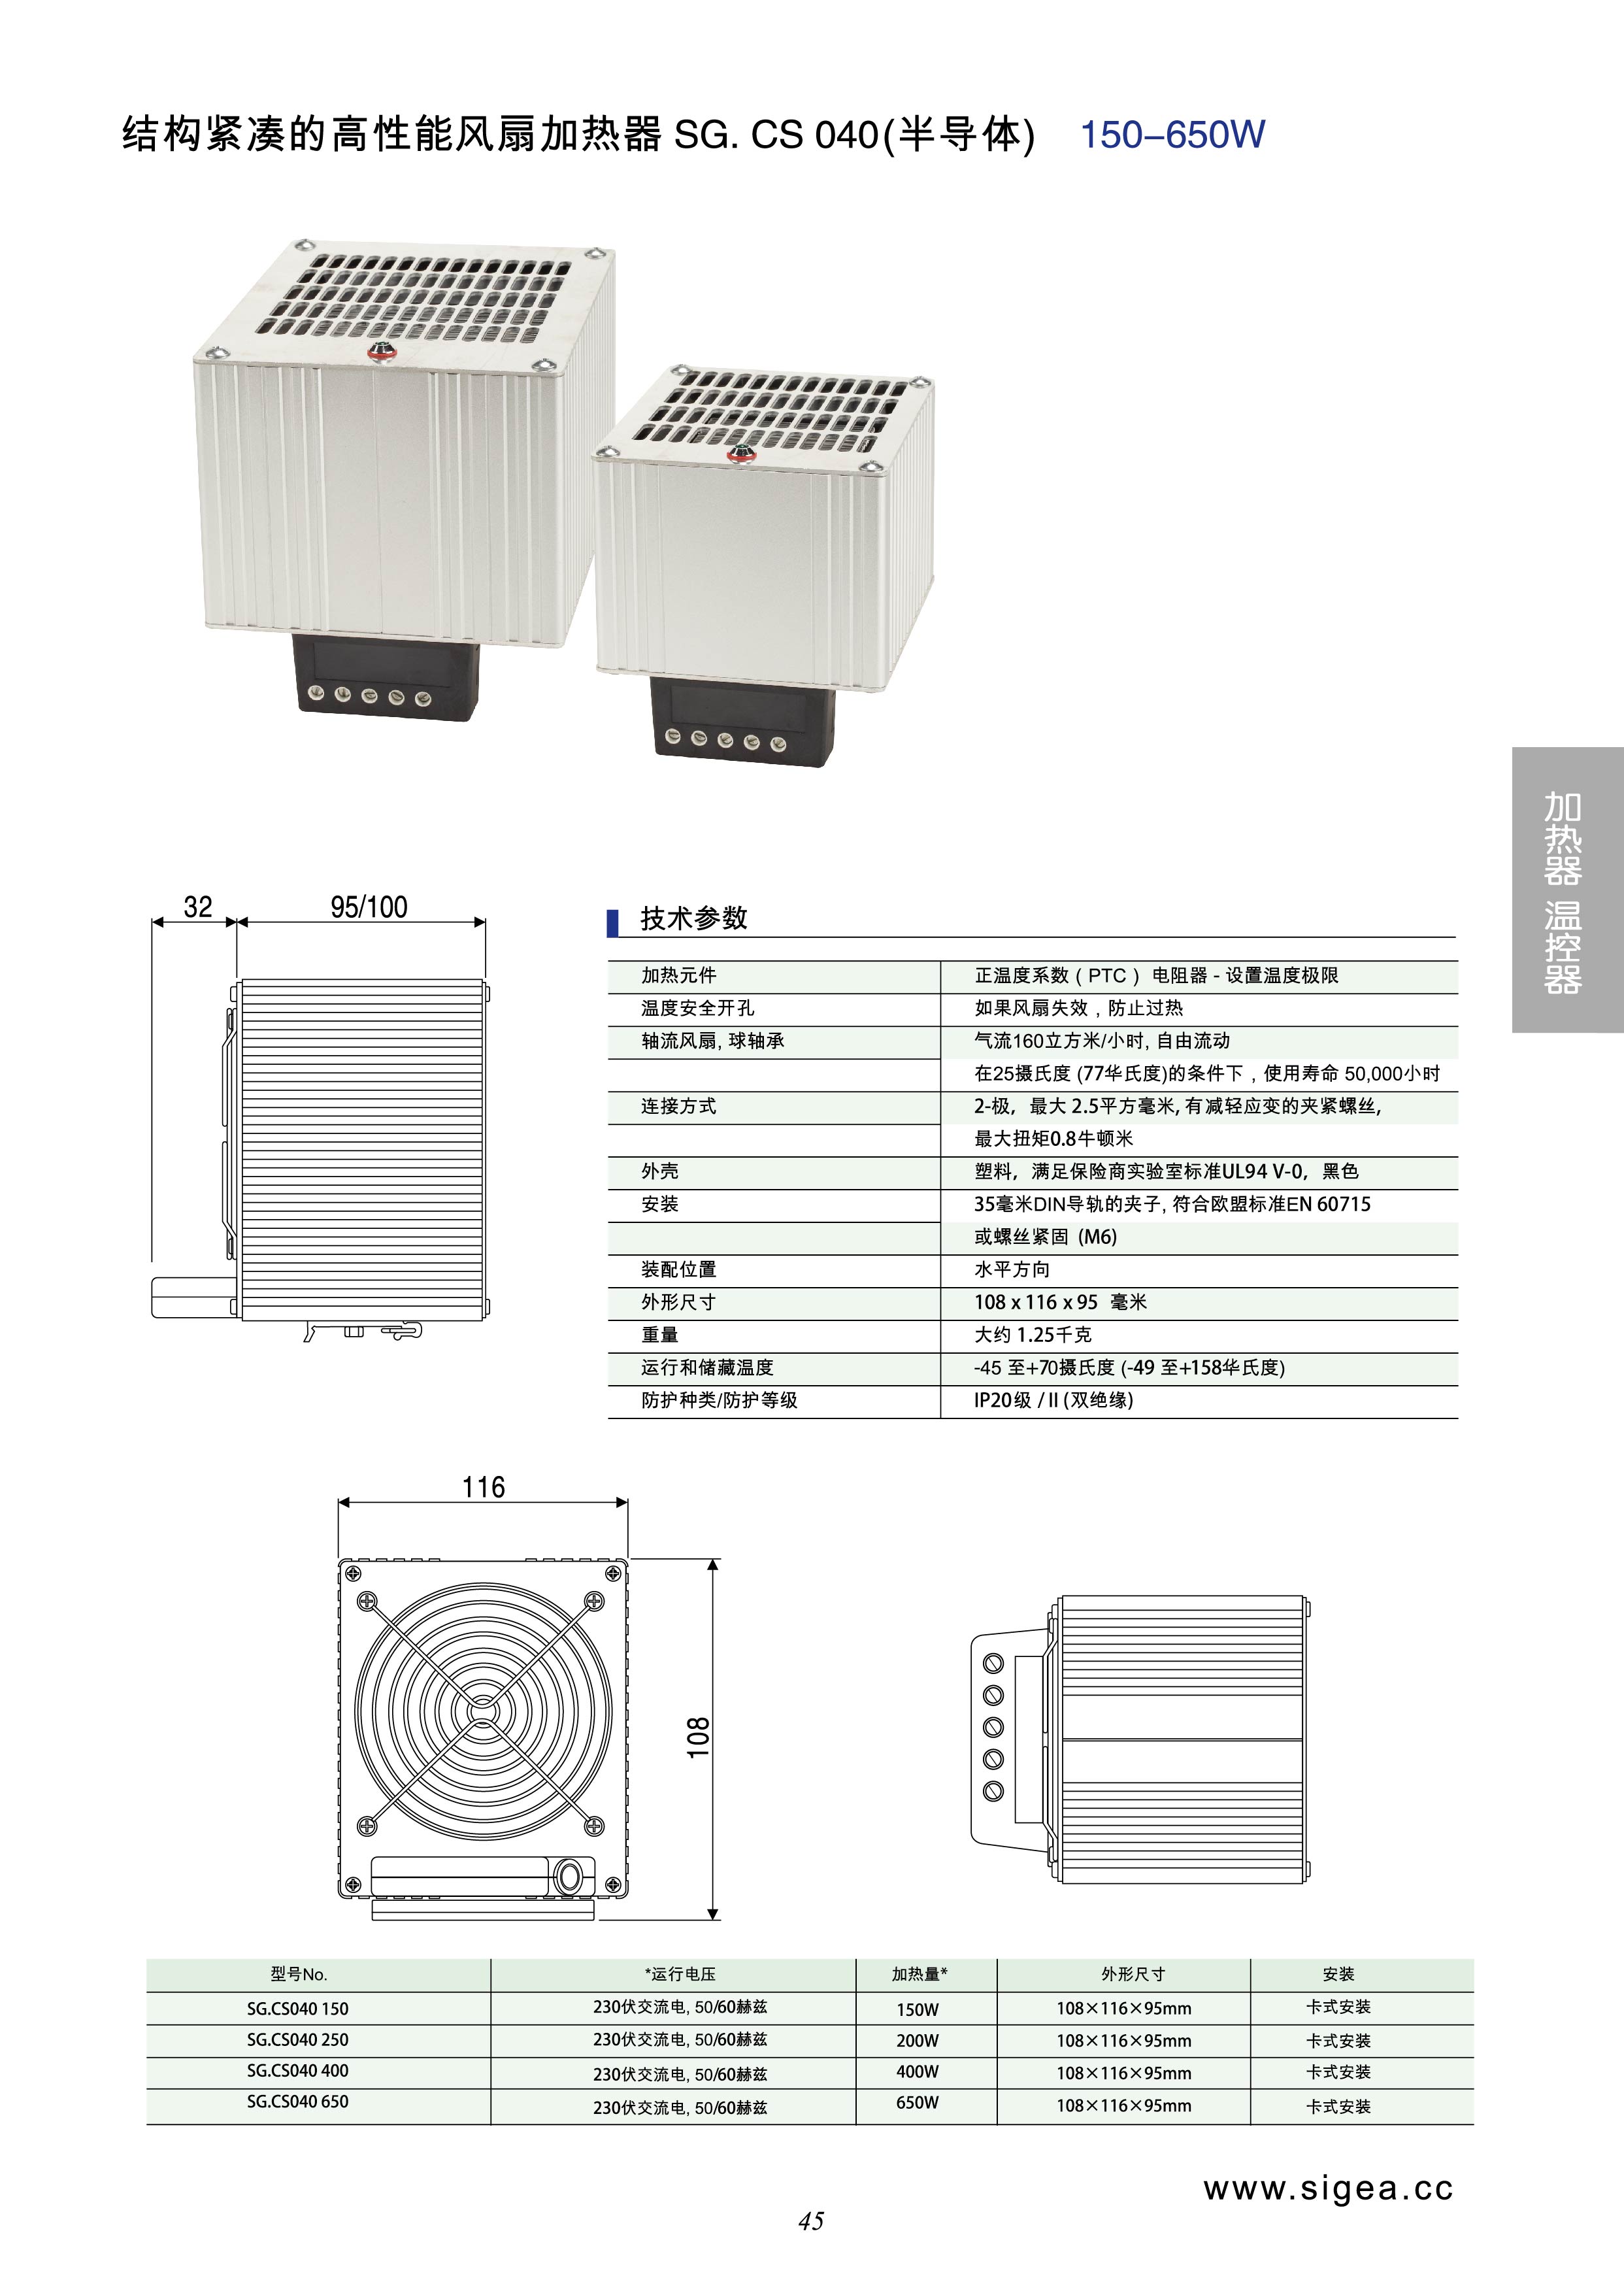 结构紧凑的高性能风扇加热器SG.CS 040